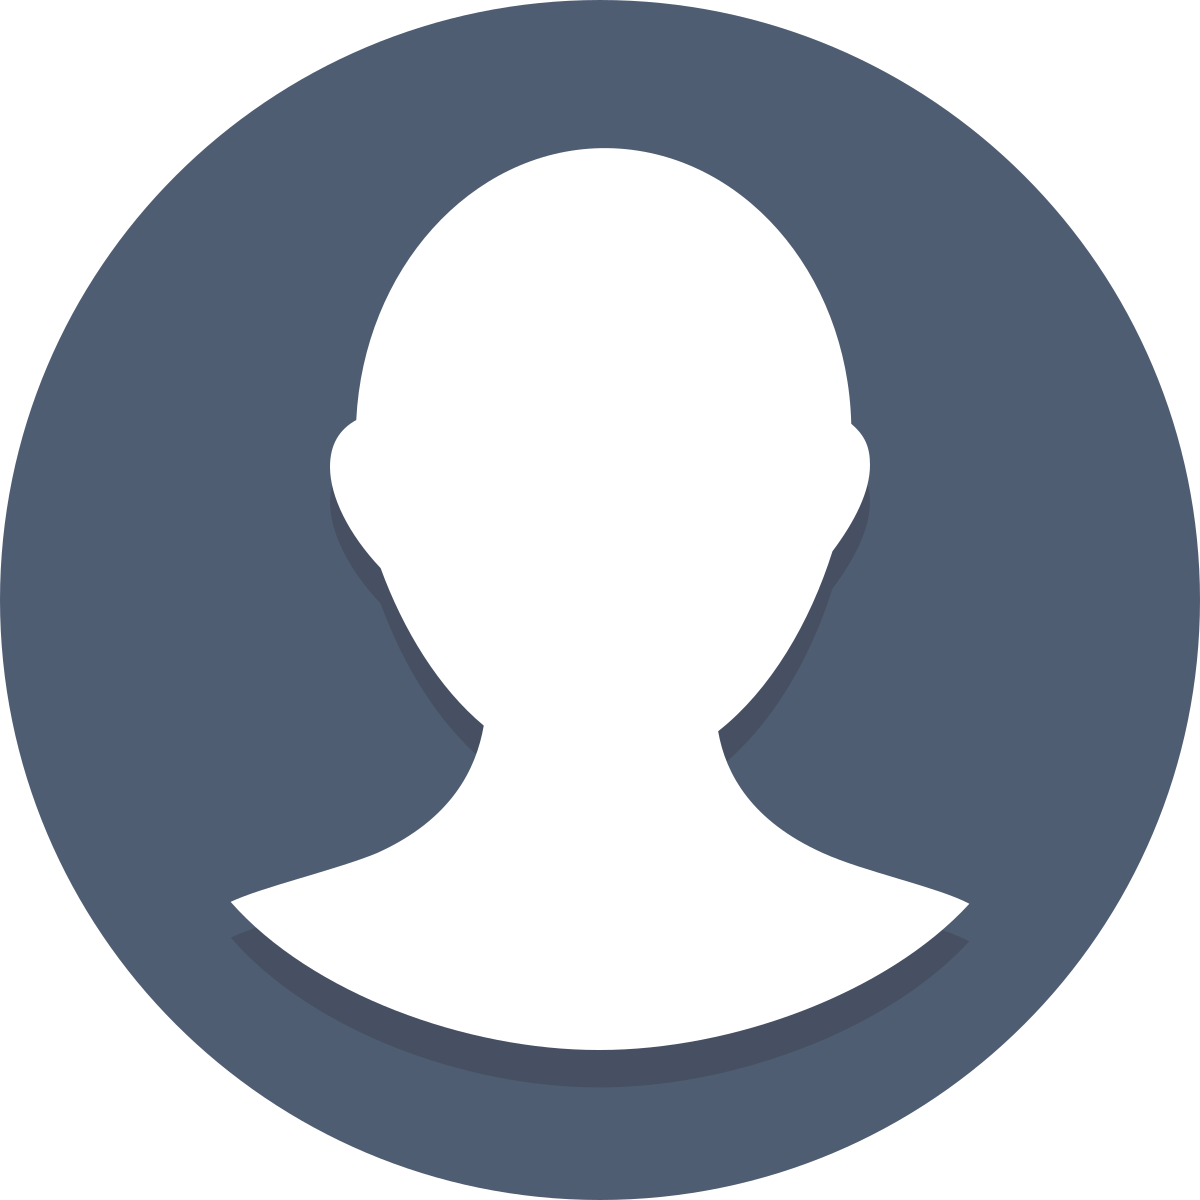 Иконка профиля. Изображение профиля. Круглый аватар. Значок аватара. Профиль пользователя user